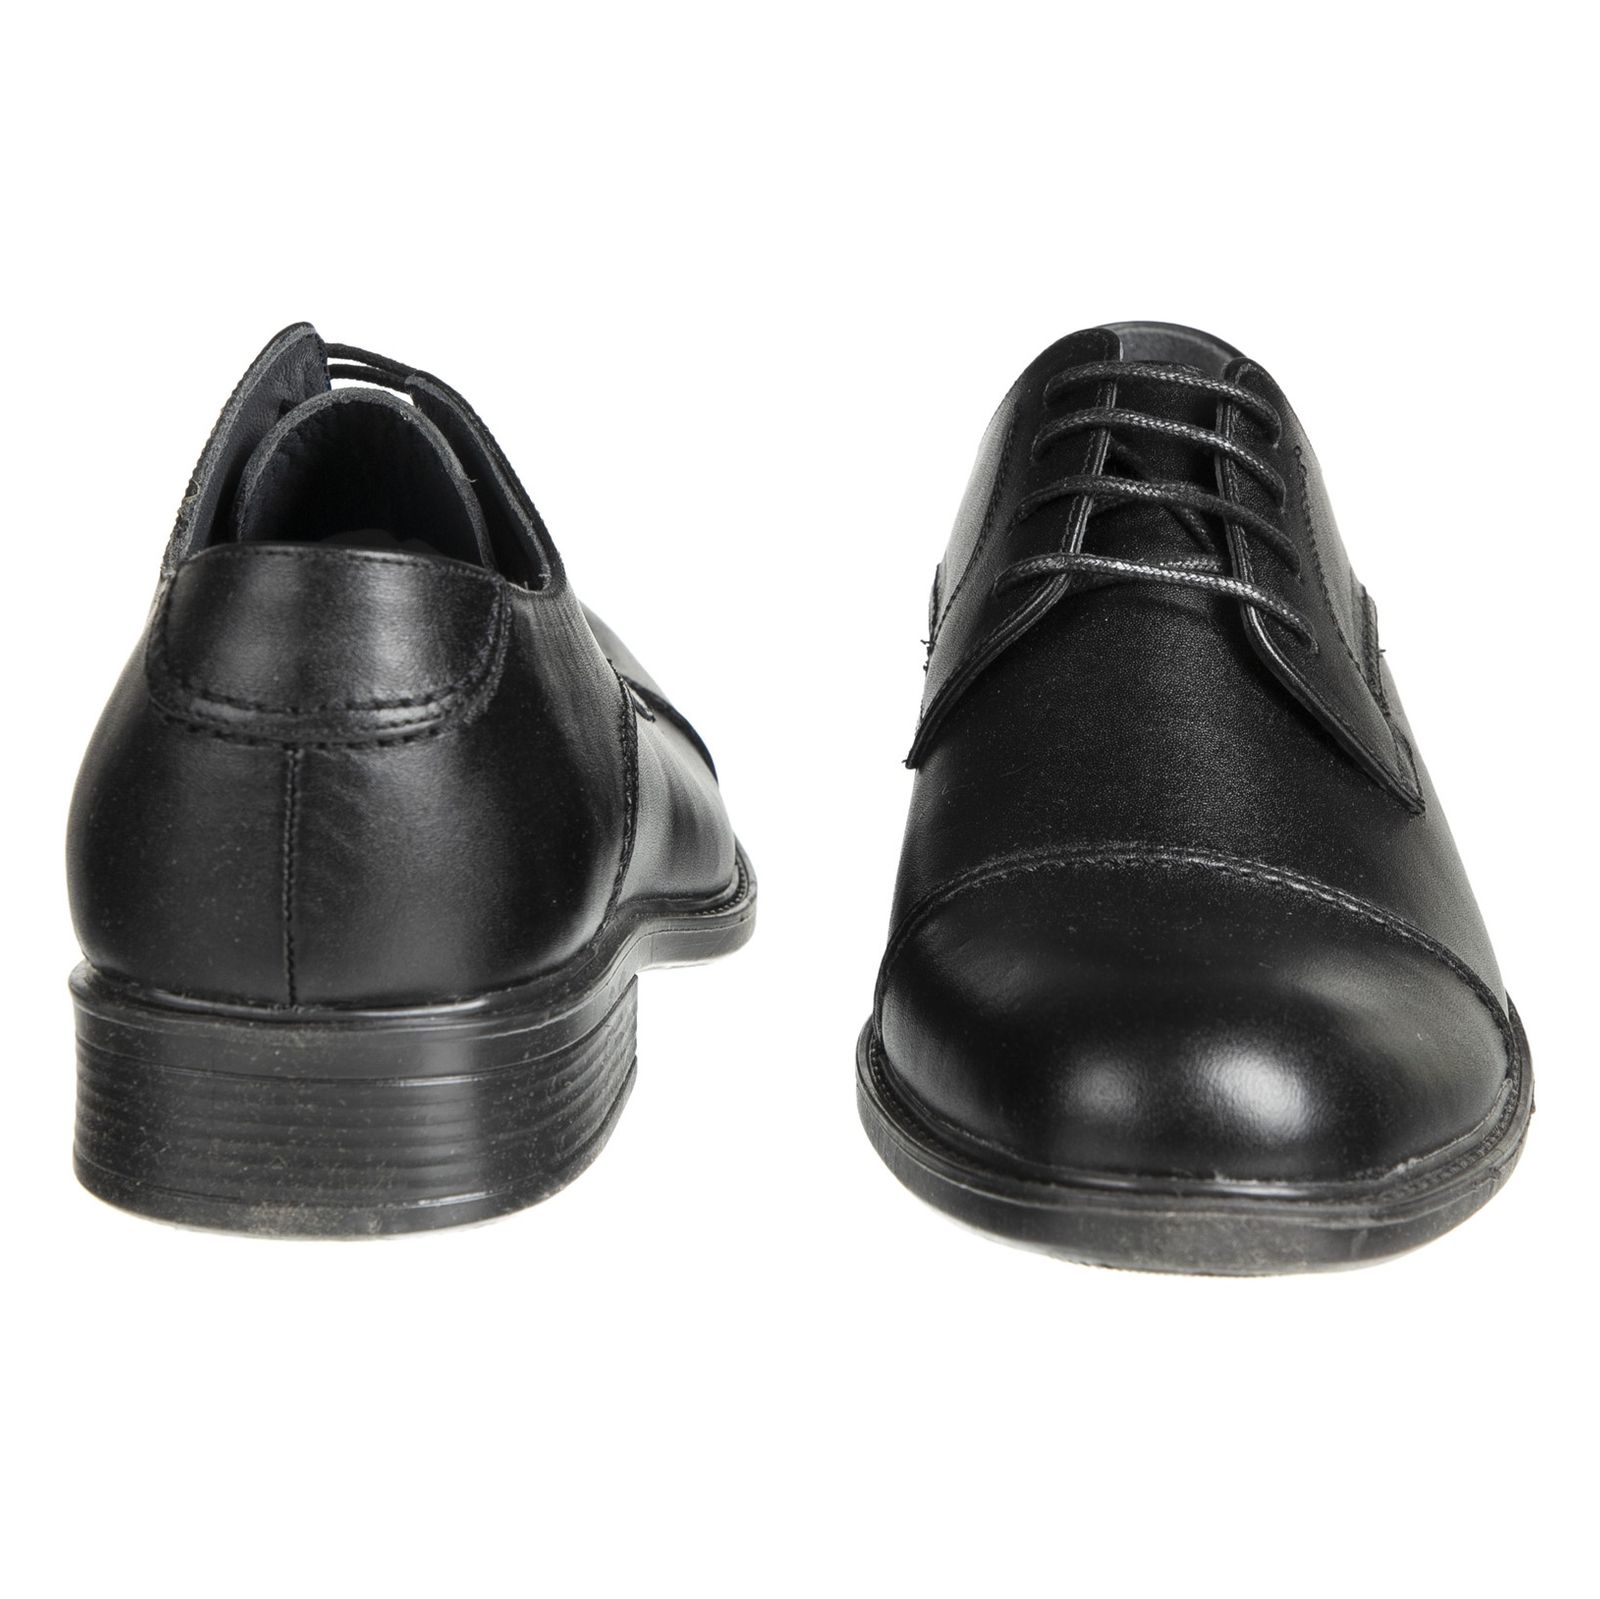 کفش مردانه دلفارد مدل 7219j503-101 - مشکی - 5